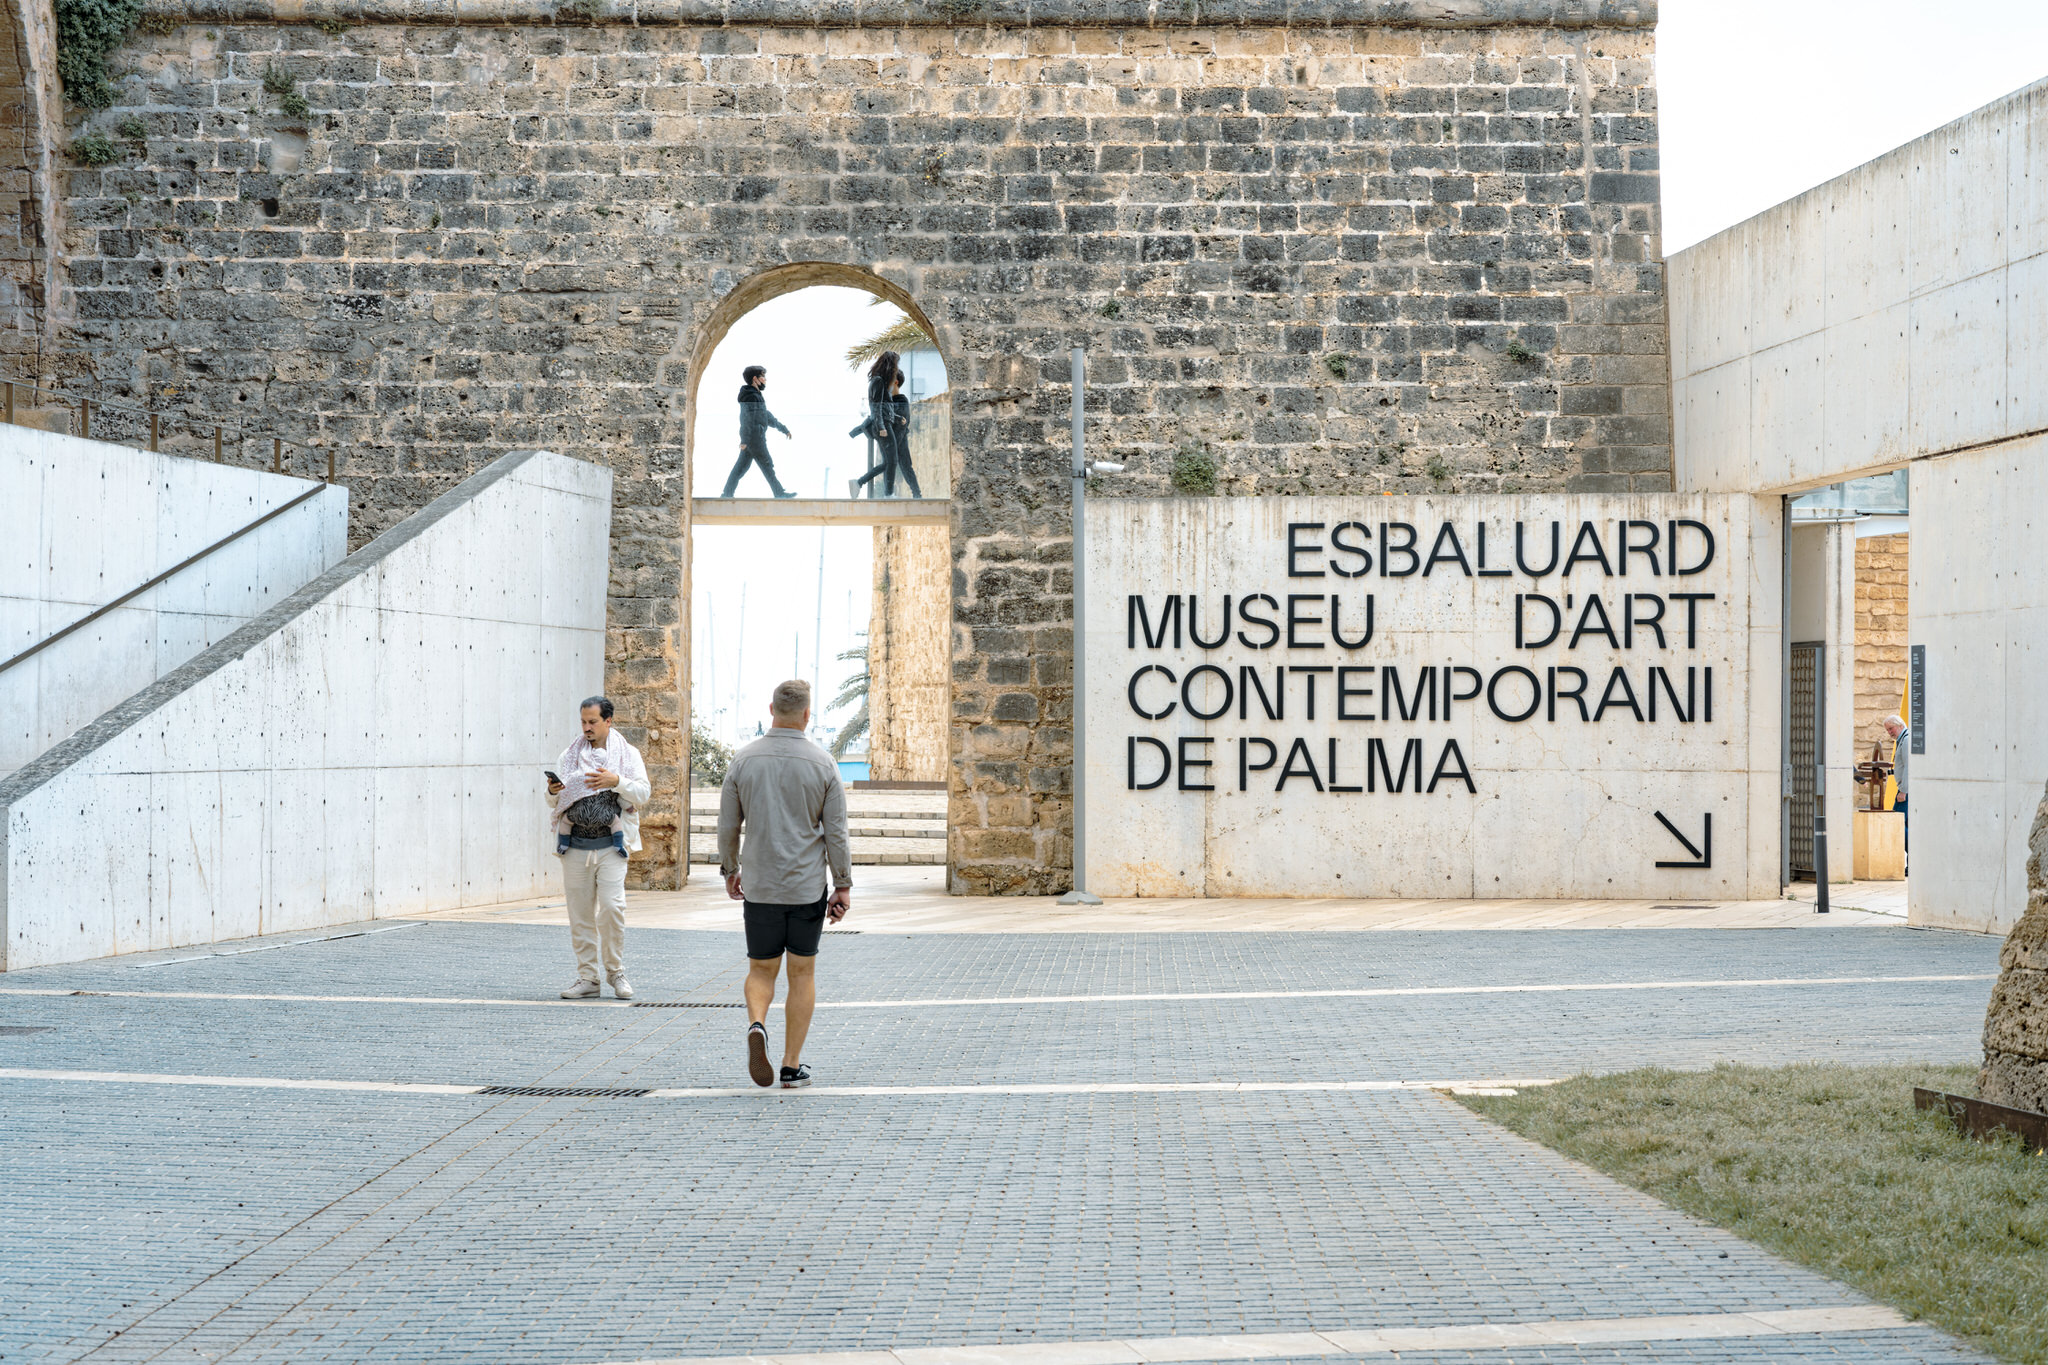 45.	Fotografía de la entrada de Es Baluard Museu D’art Contemporani de Palma